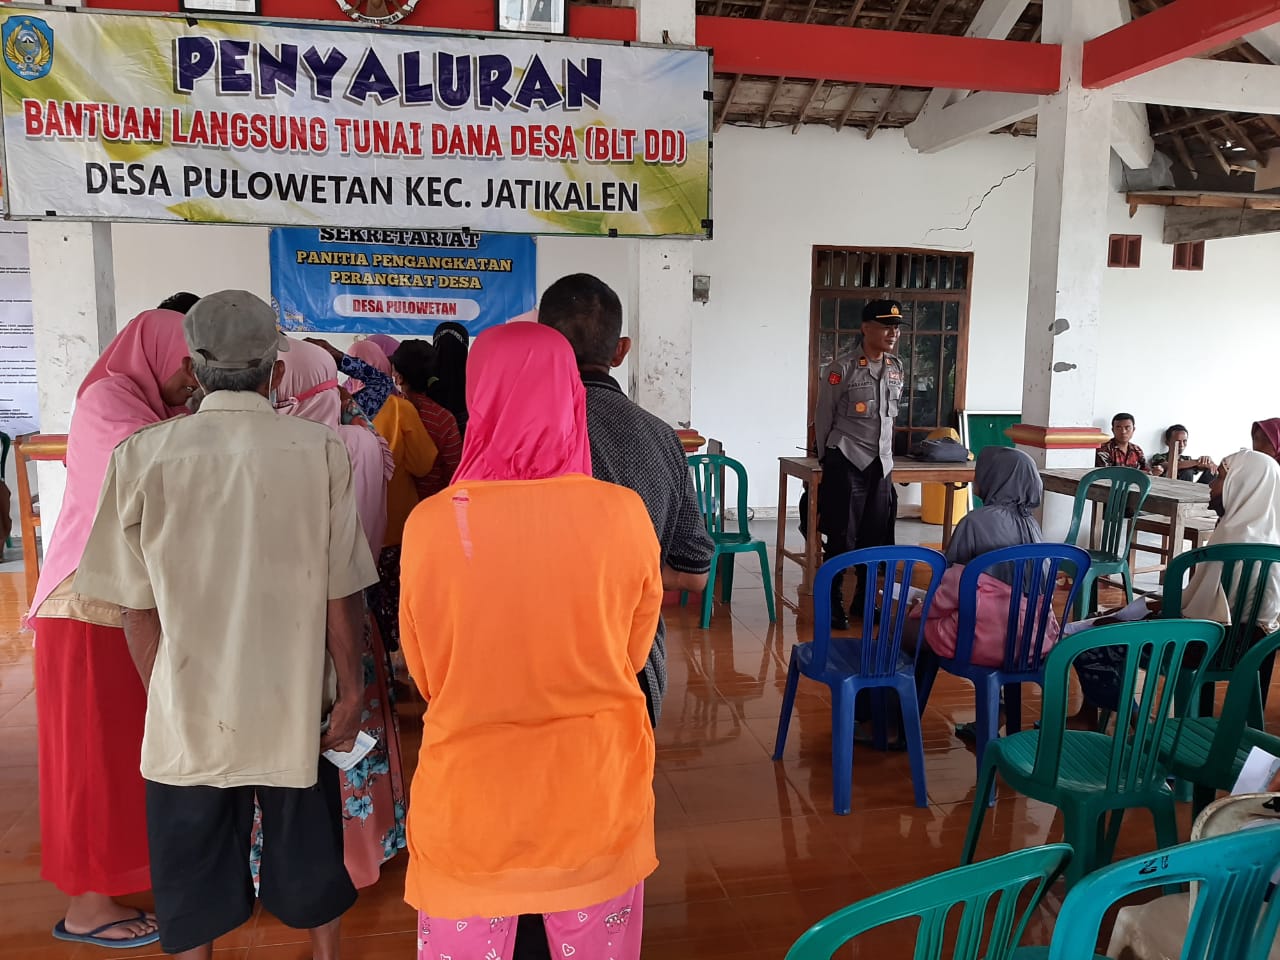 Kapolsek Jatikalen dan Bhabinkamtibmas Laksanakan Pam Peyaluran BLT.DD di Desa. Pulo Wetan